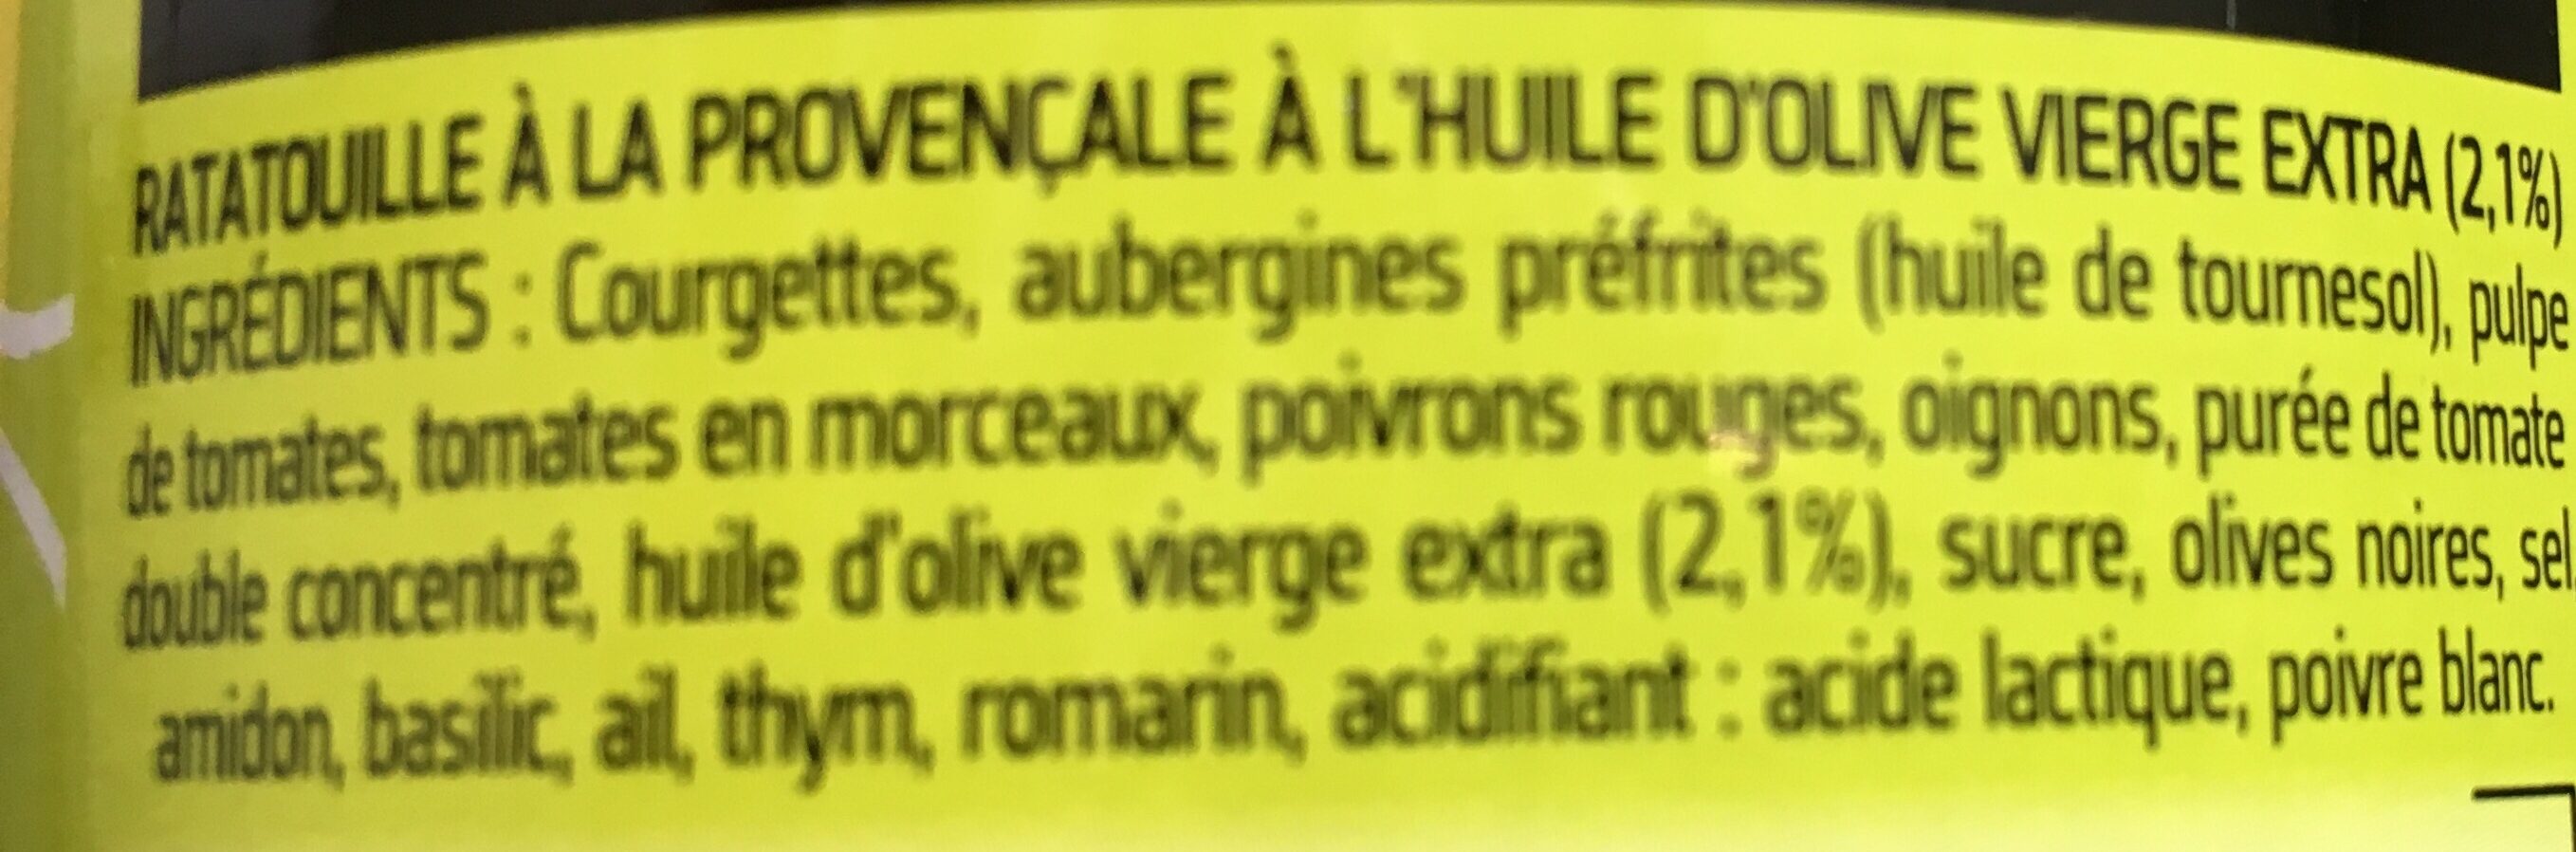 Ratatouille à la Rovençale - Ingredients - fr